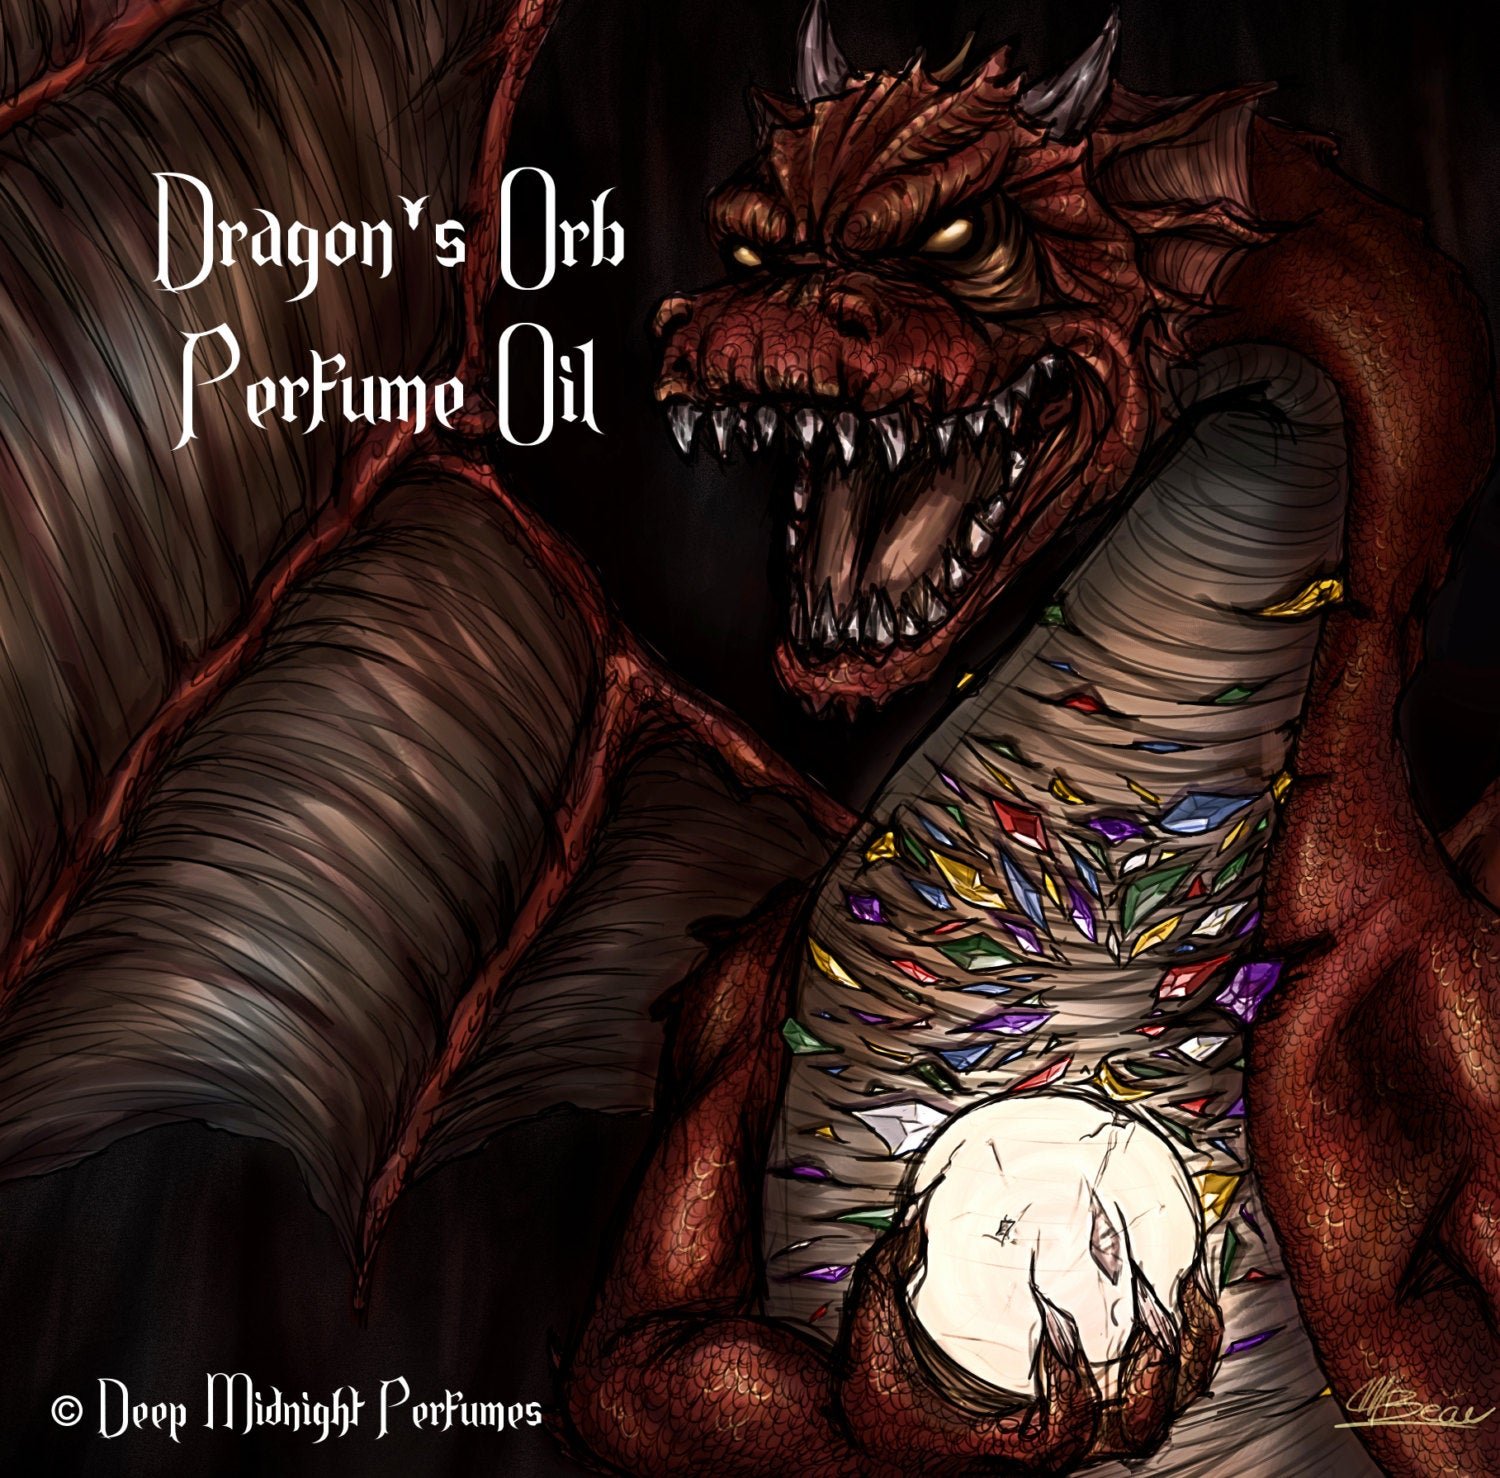 Dragon's Orb Perfume Oil -  Inspired by THE HOBBIT - White Amber, Black Pepper, Juniper Berries, Vetiver